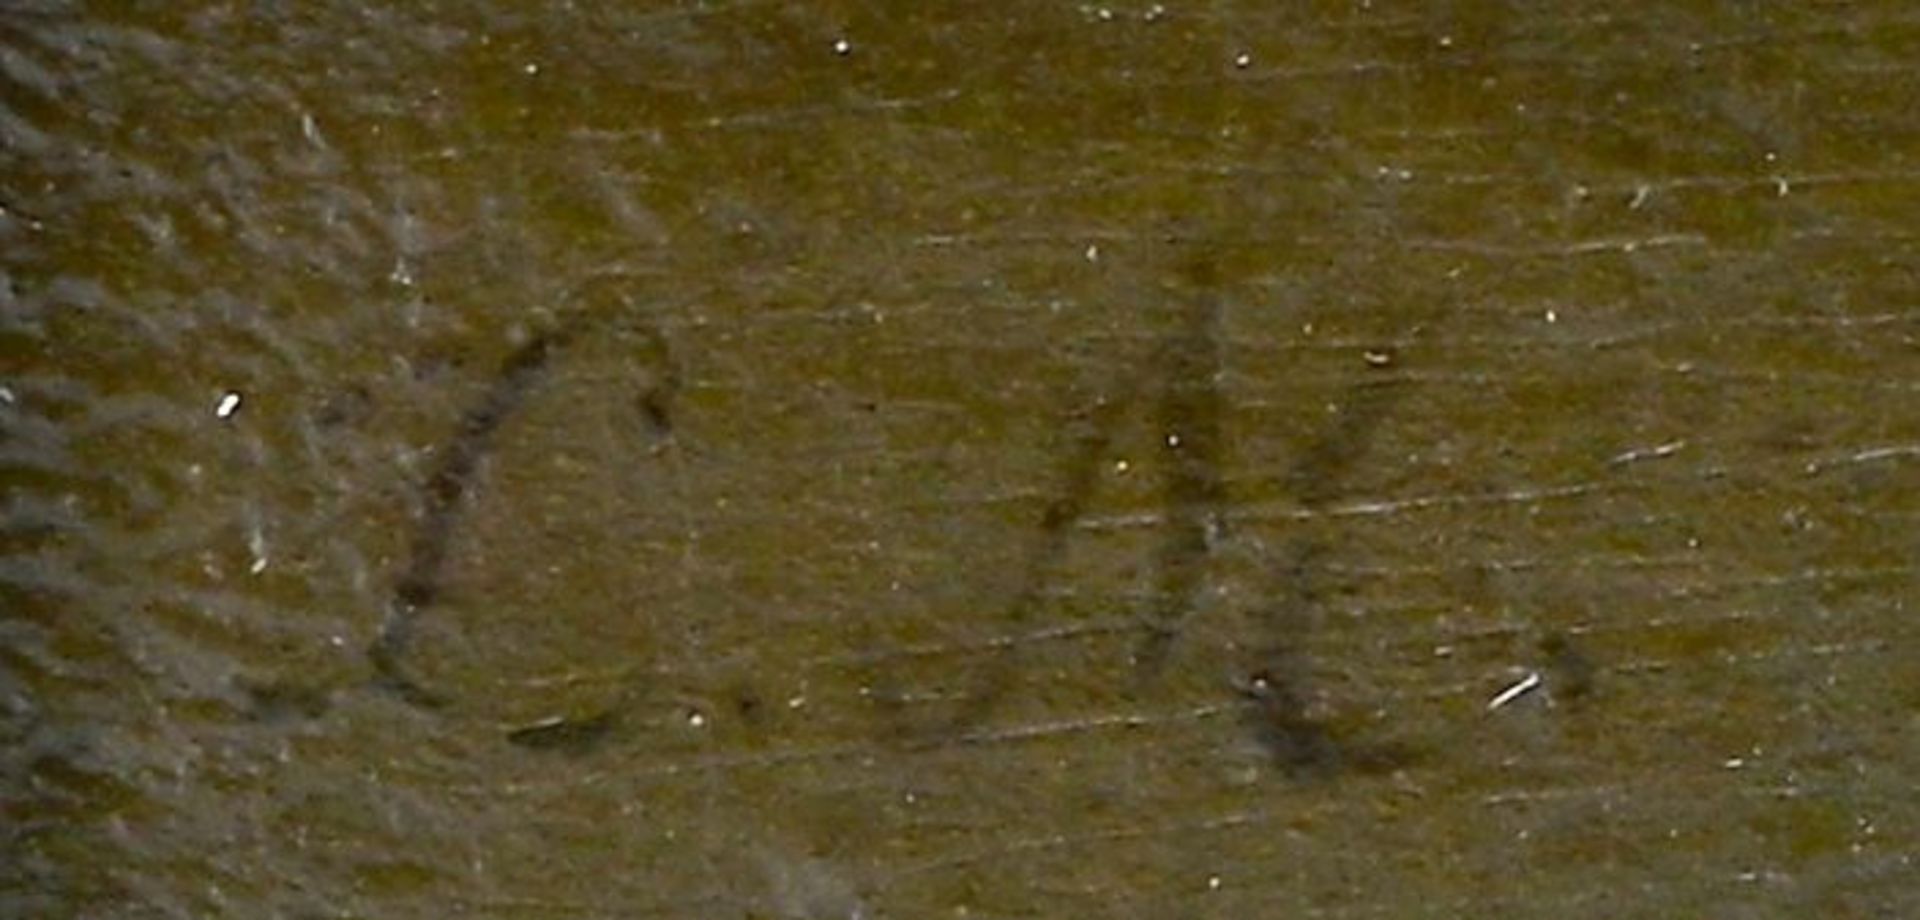 Kopie nach Watteau, Wahrsagerin / Copy after Watteau, Fortune teller - Image 5 of 5